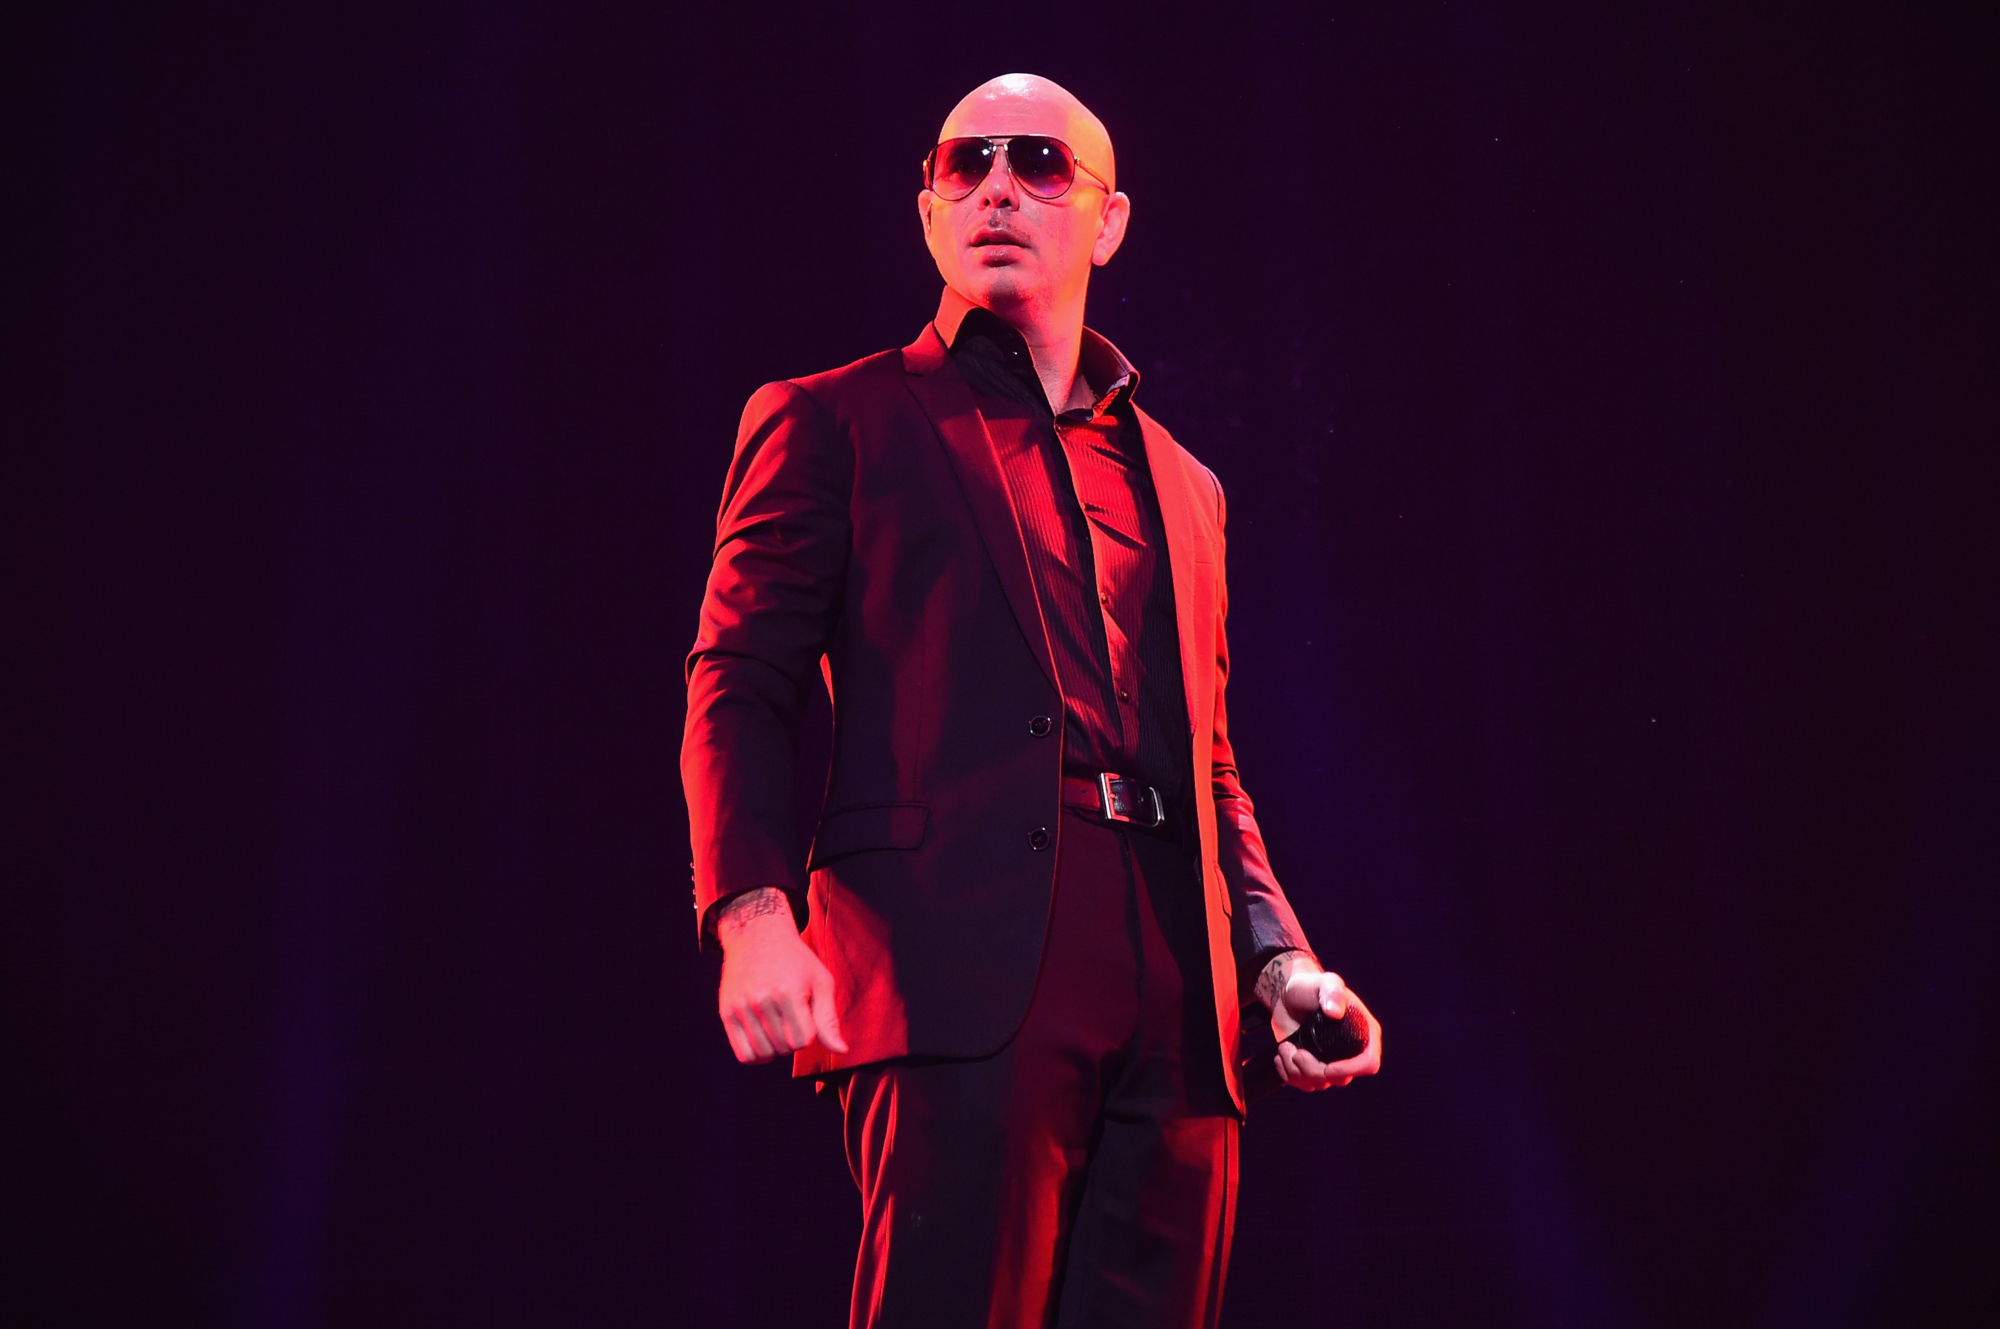 Télécharger des fonds d'écran Pitbull (Chanteur) HD